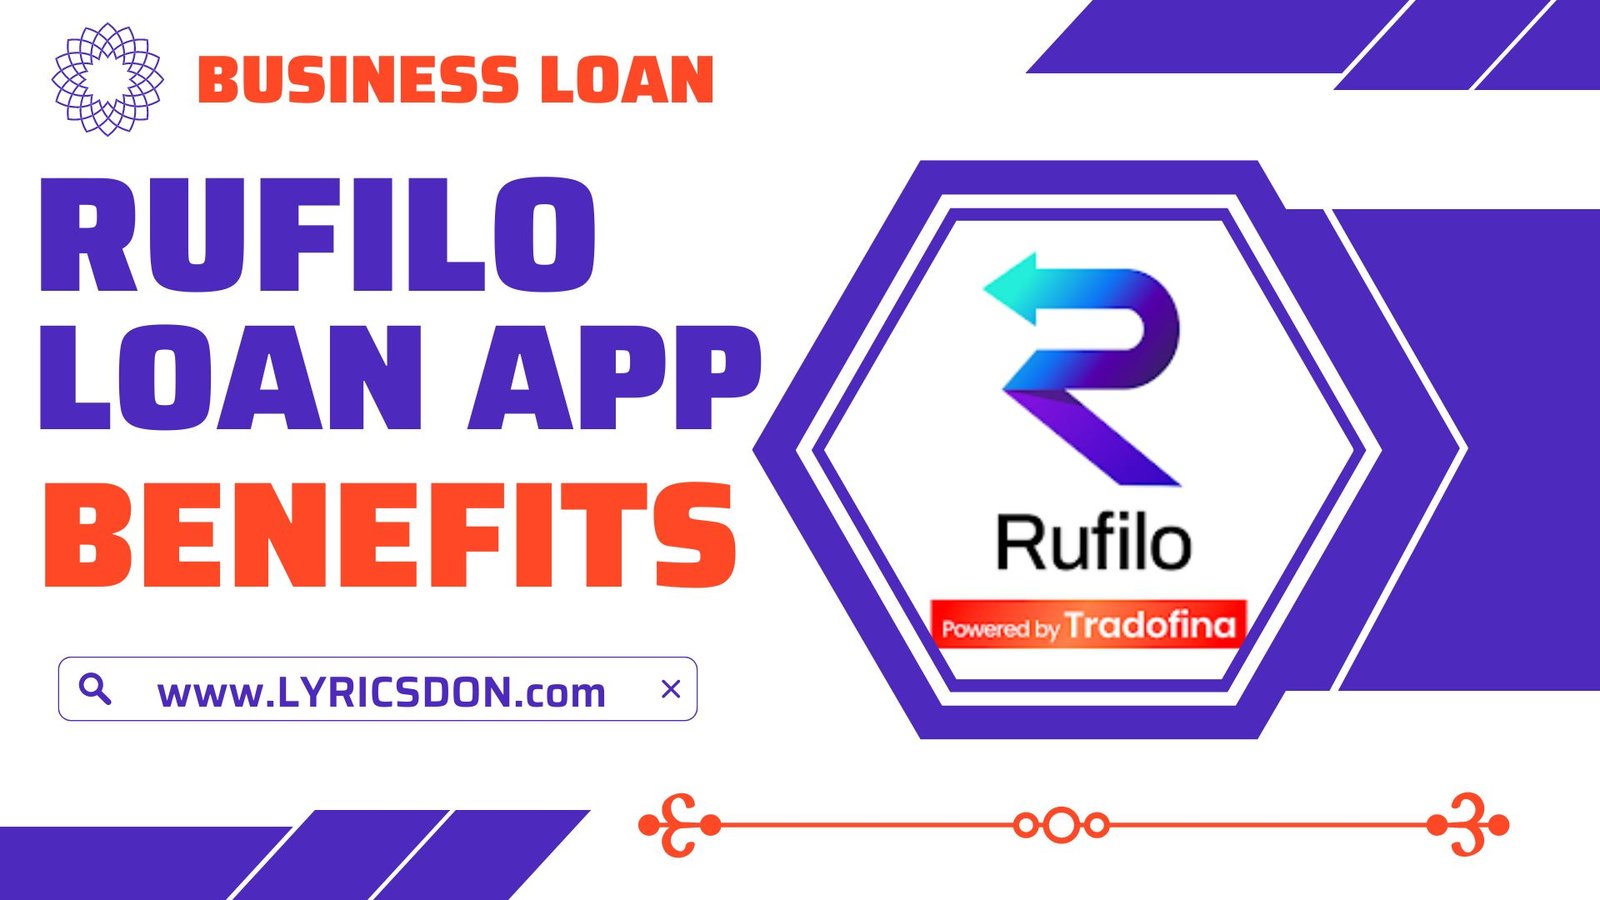 Rufilo Business Loan App Benefits